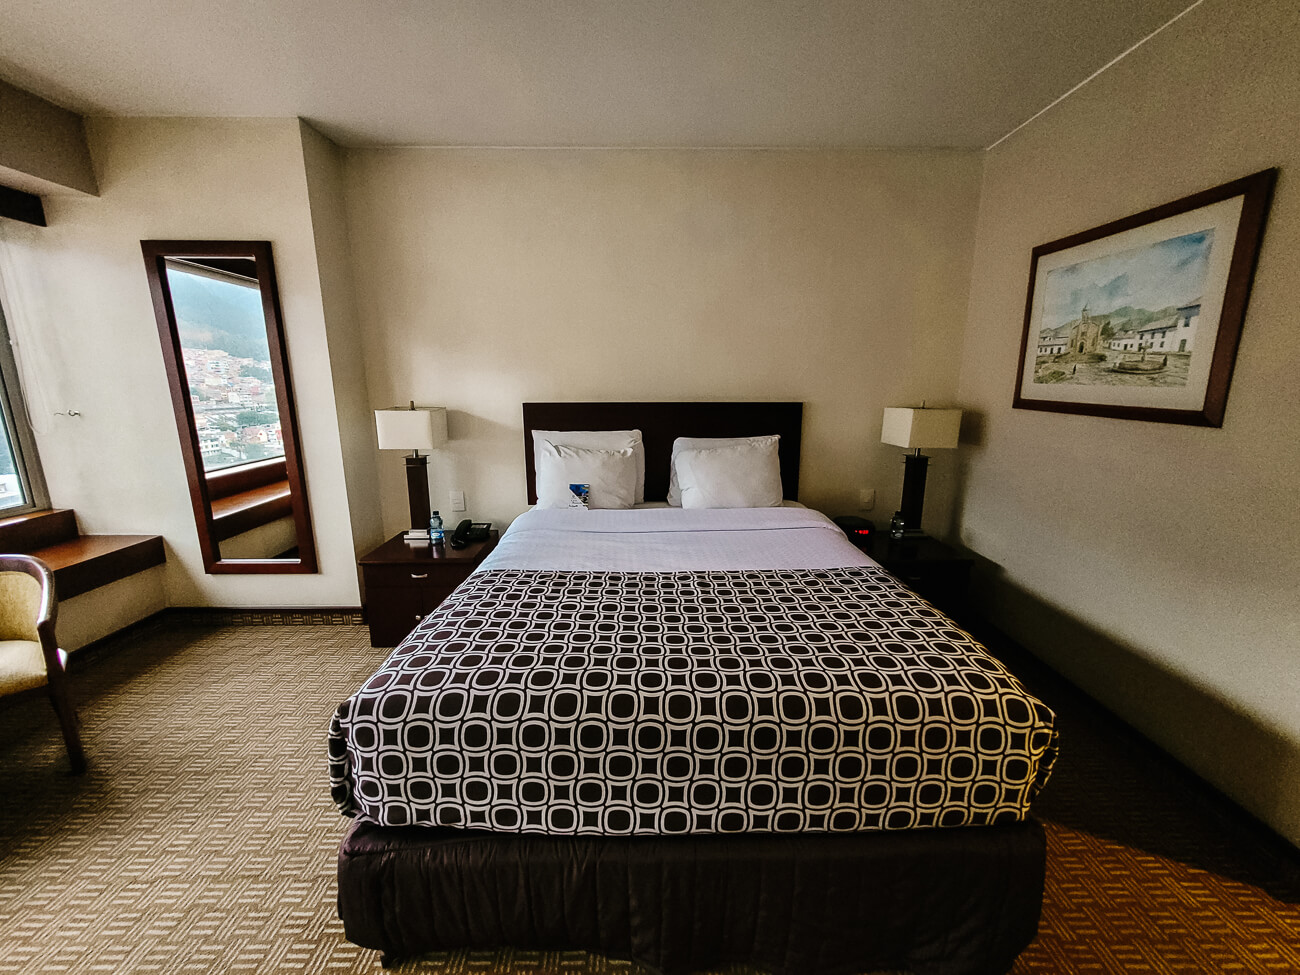 Tequendama Suites hotel room in Bogota